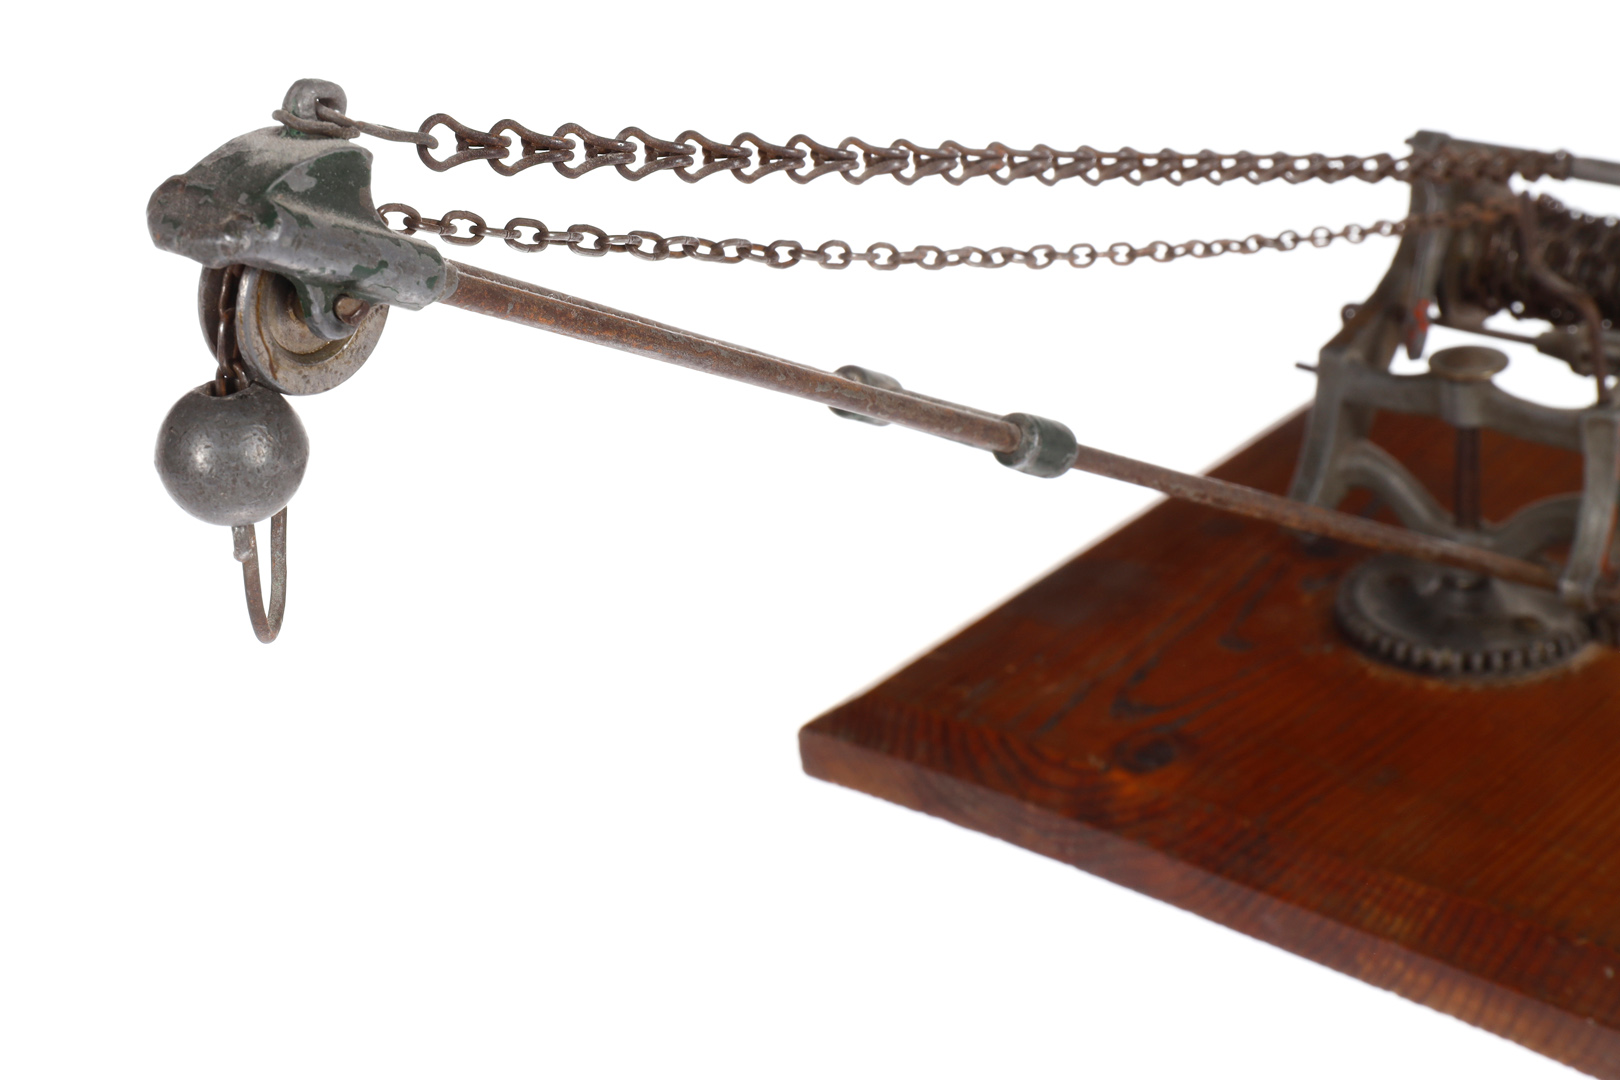 Uralt-Gitter-Drehkran, handlackiert, mit Handkurbel, Kette und Kugelhaken, auf Holzsockel, - Image 6 of 6